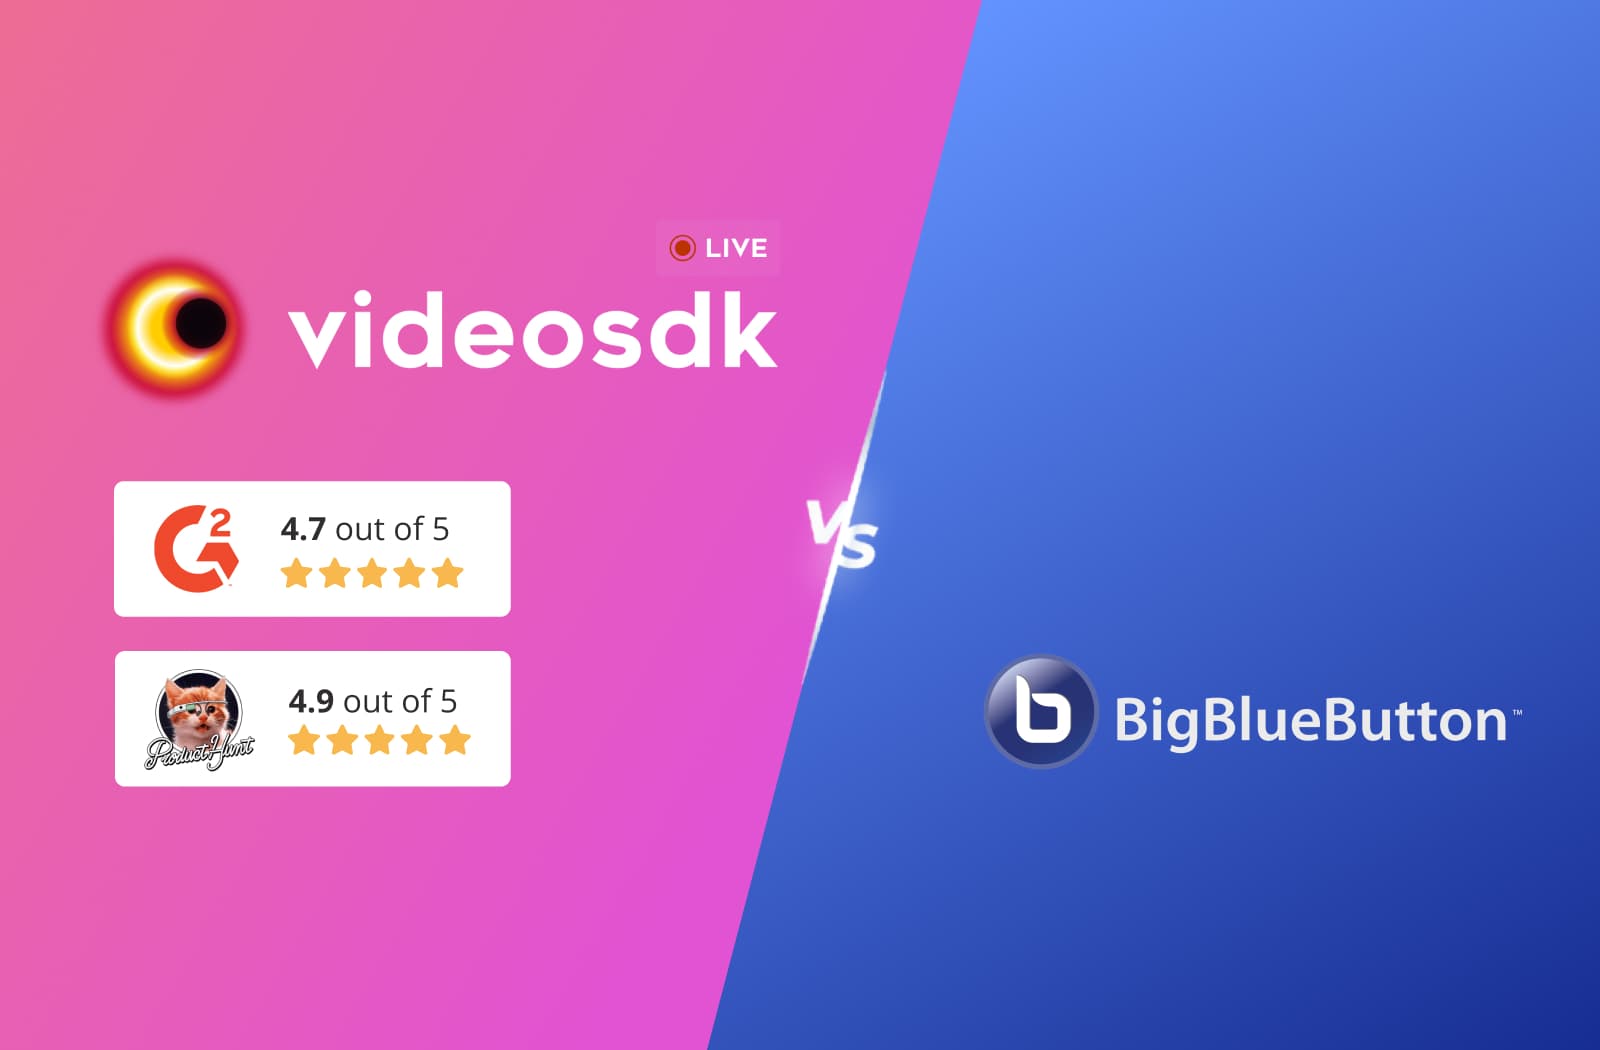 BigBlueButton vs Videosdk